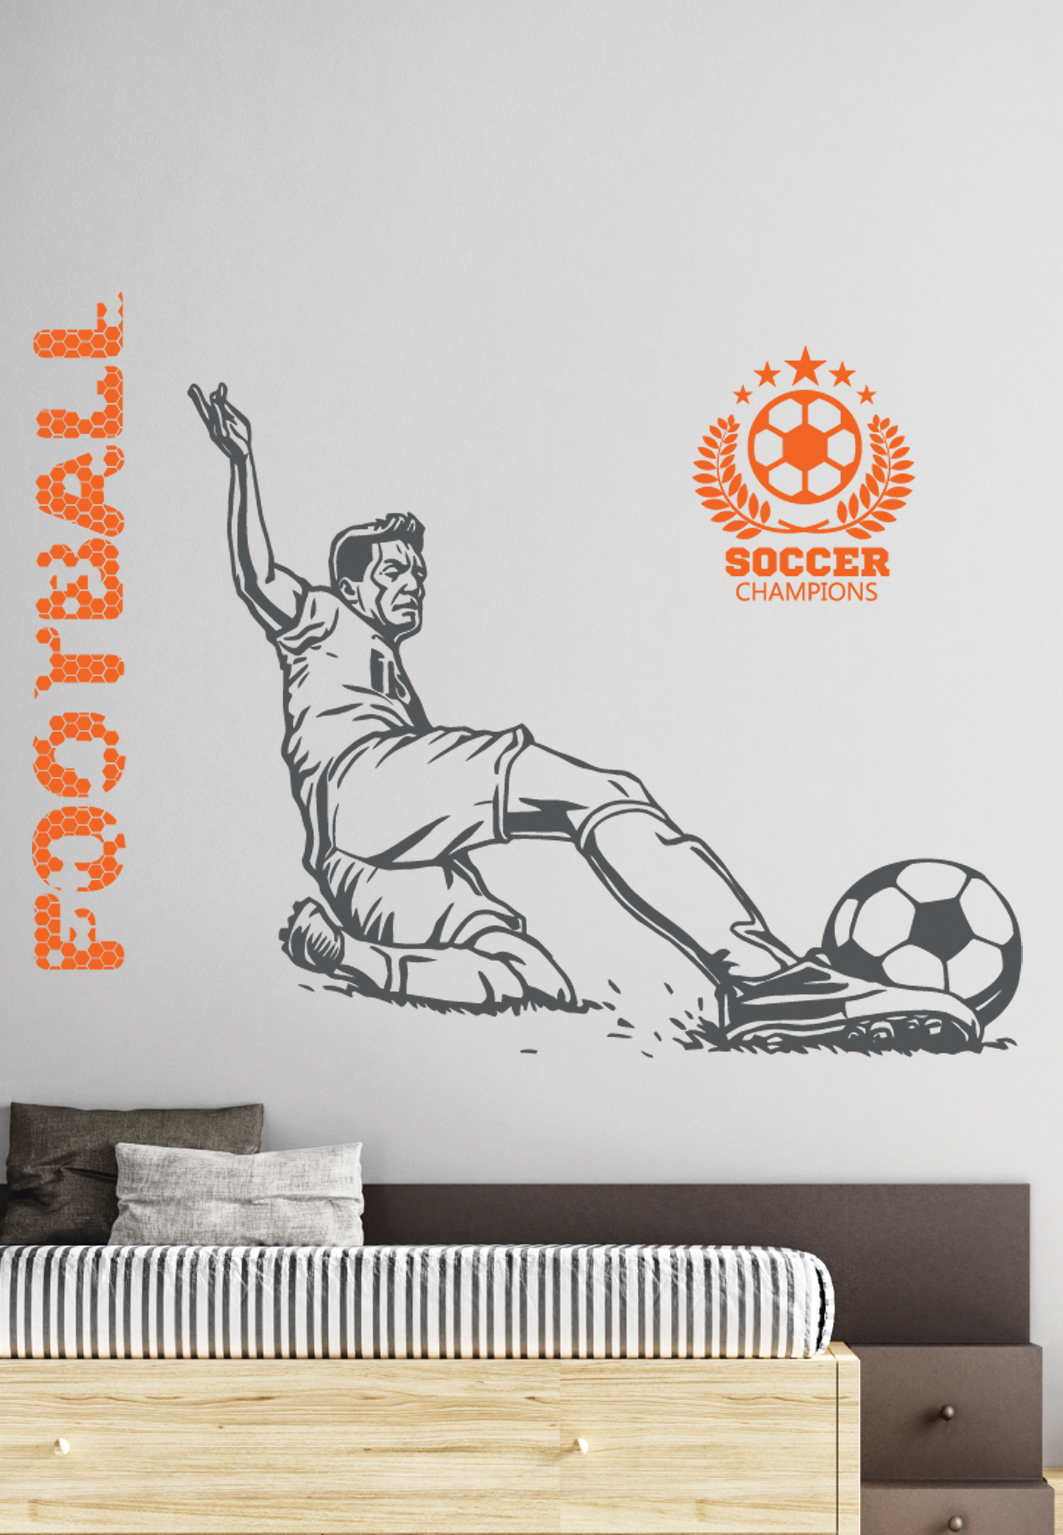 מדבקת קיר - שחקן כדורגל בעצירת כדור - כולל טקסט וסמל